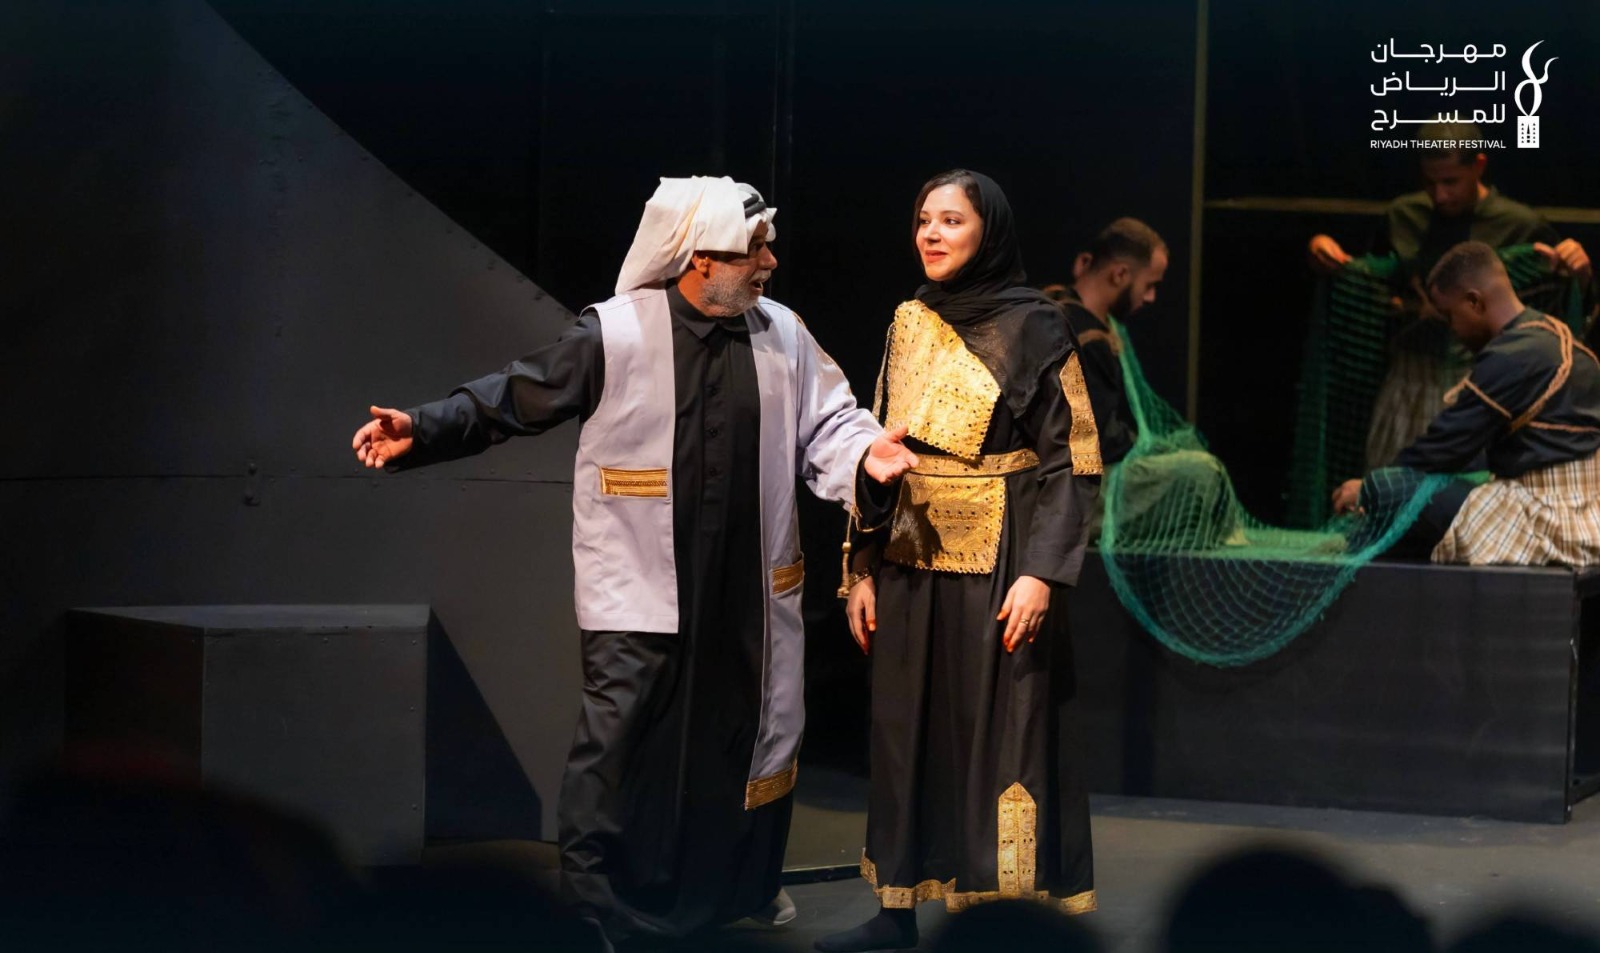 يأتي مهرجان الرياض للمسرح لتنشيط وتفعيل الحراك المسرحي السعودي عبر حِزمة من العروض المسرحية السعودية